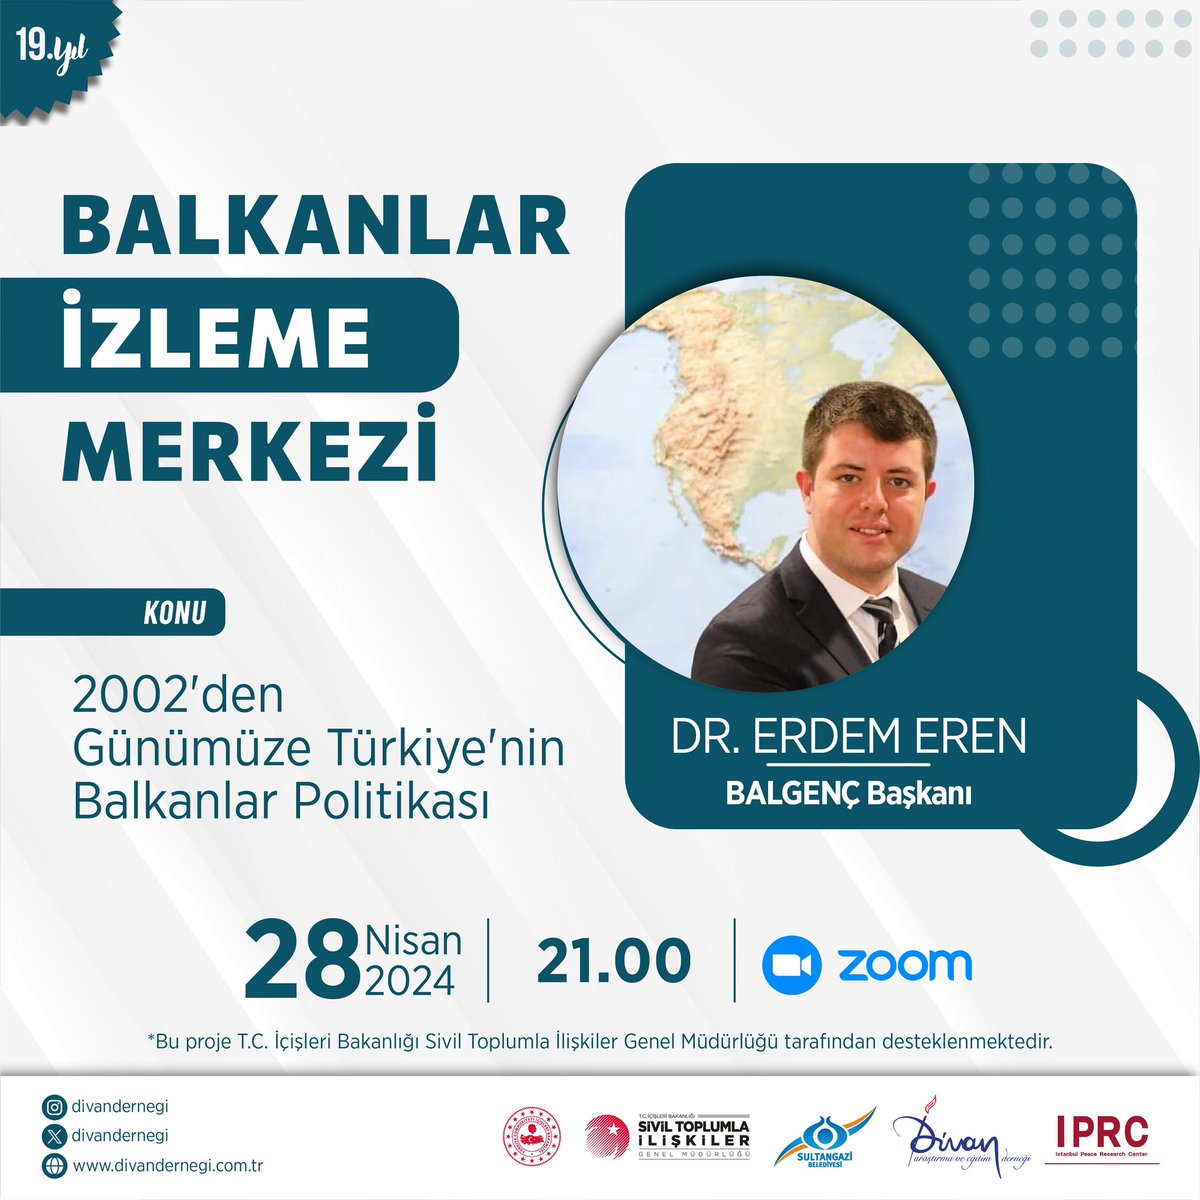 #Balkanlar İzleme Merkezi olarak, bu akşam saat 21.00’de, “2002’den Günümüze Türkiye’nin Balkanlar Politikası” başlığı altında Dr. Erdem Eren ile bir program gerçekleştireceğiz.